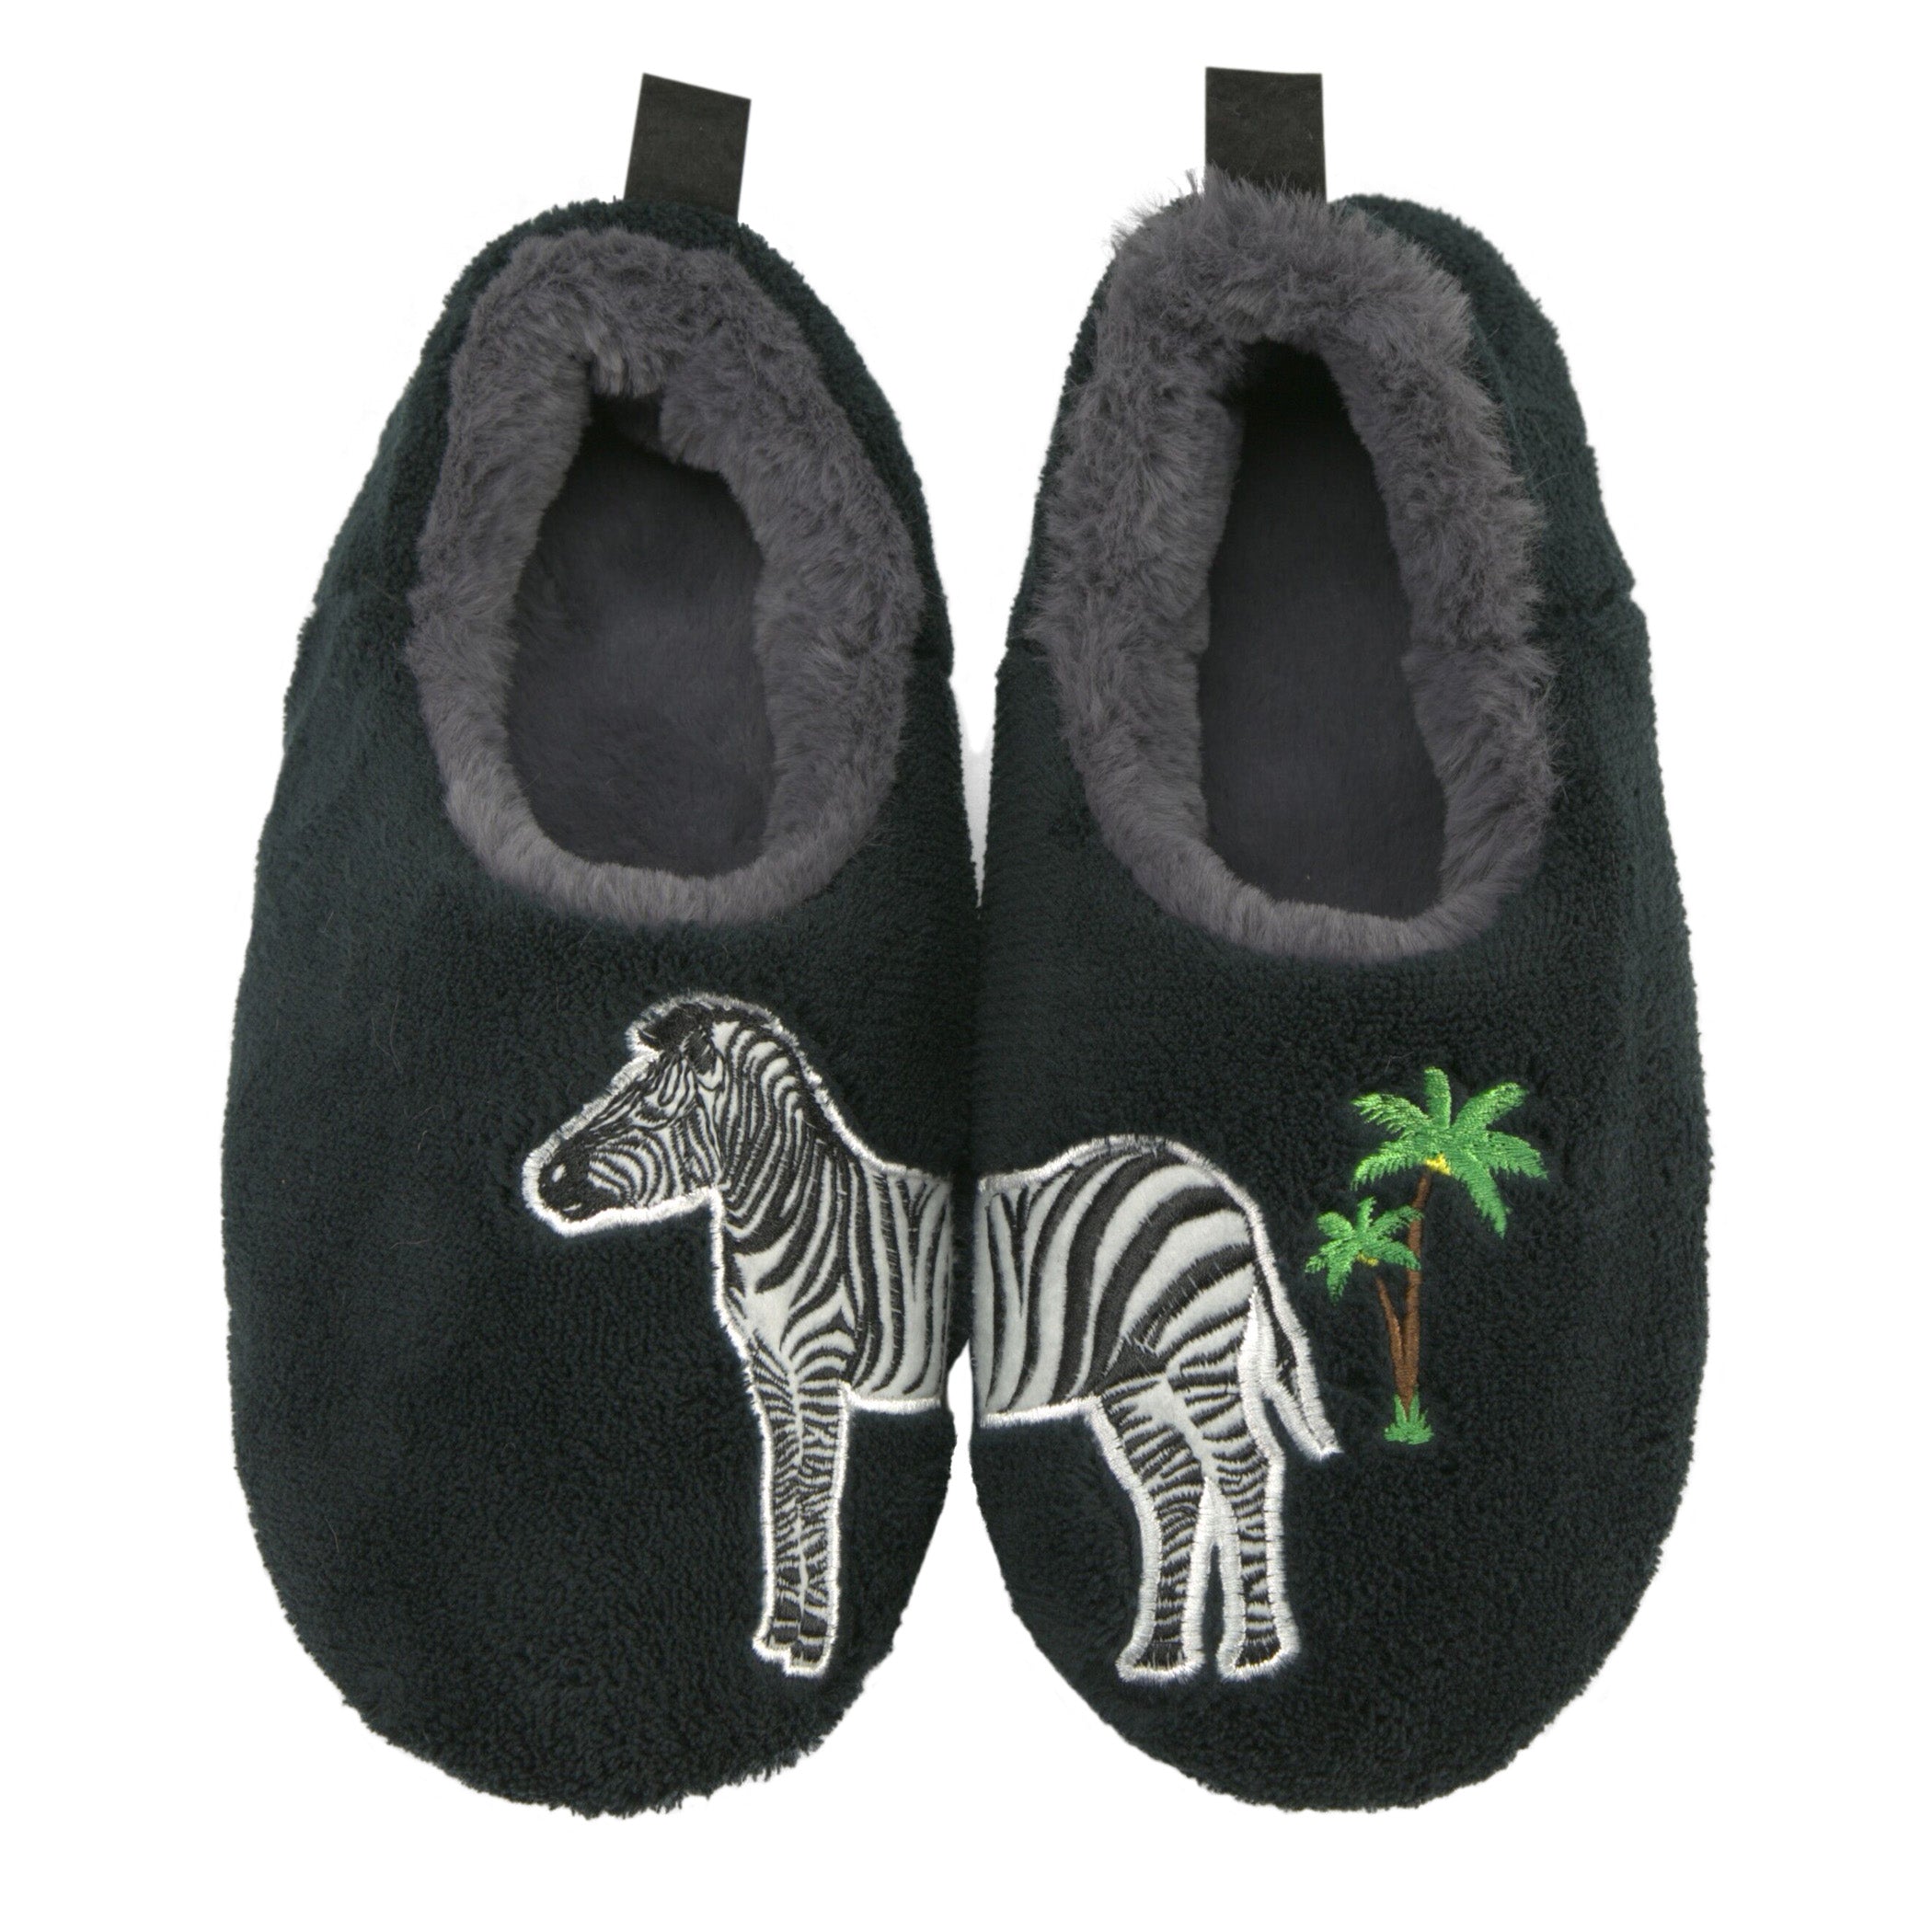 Zebra Slippers for House | Oooh Socks